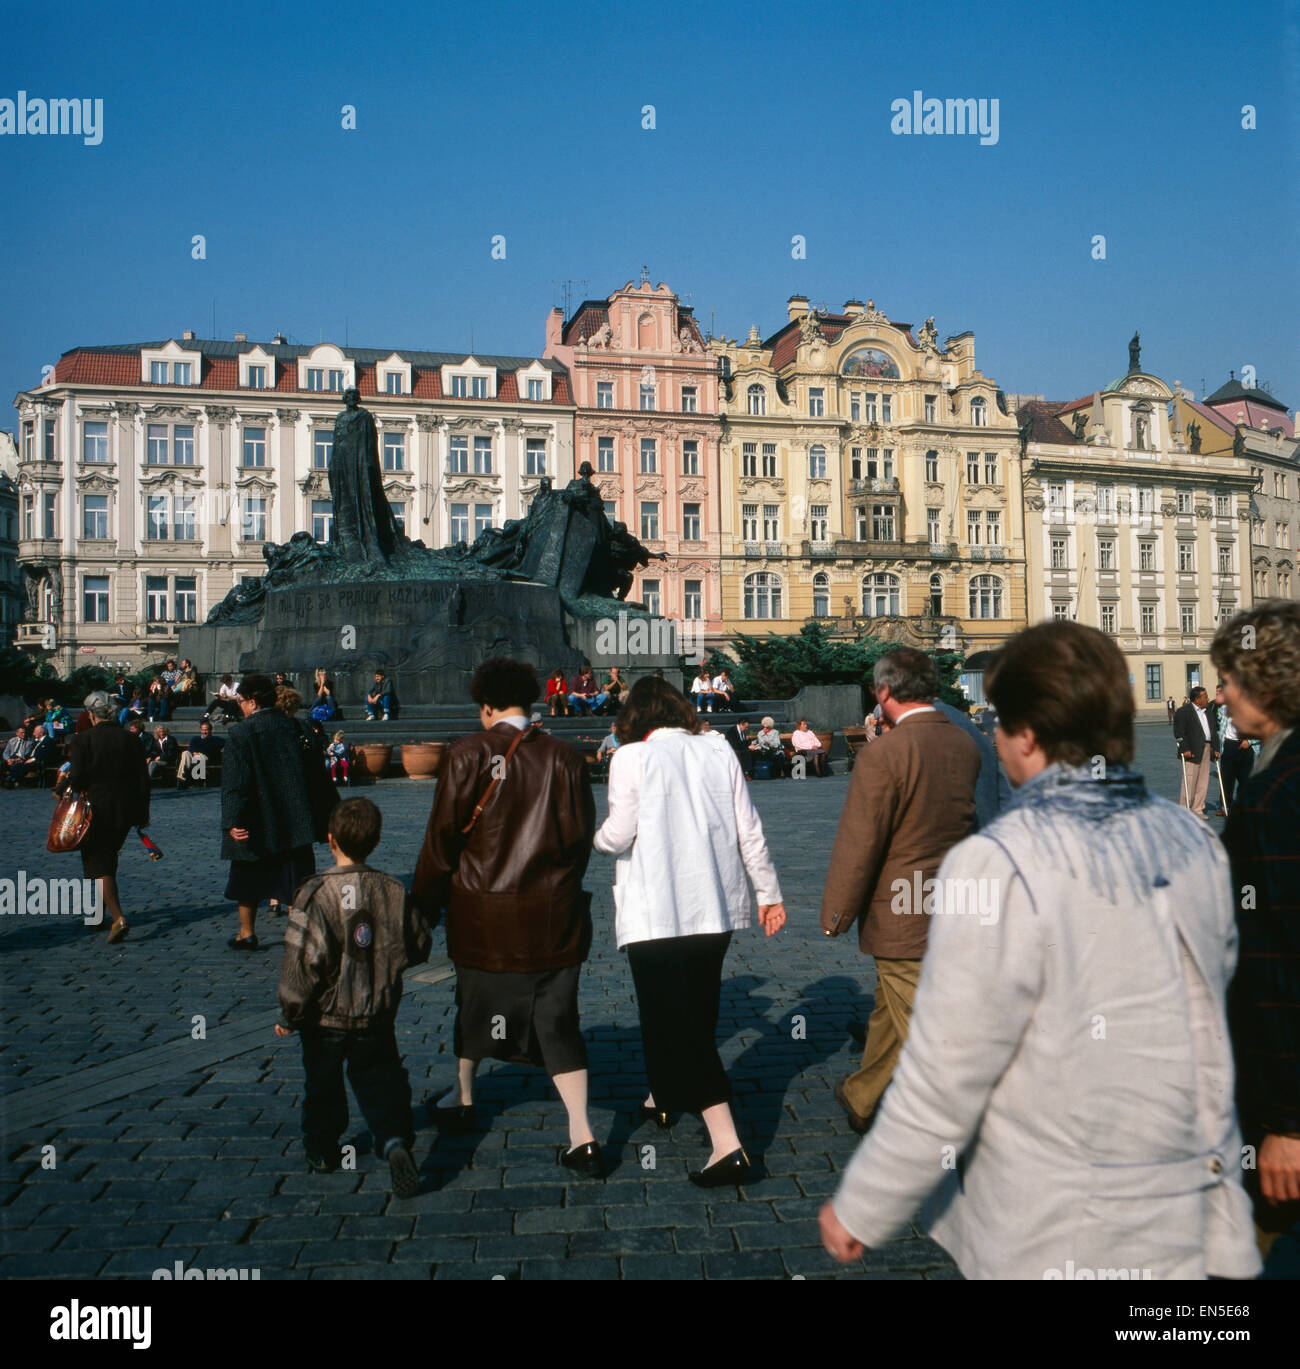 Suis Fußgänger Altstädter Ring in Prag, République tchèque des années 1980 er Jahre. Les piétons traversant la place de la Vieille Ville à Prague, Czech Republi Banque D'Images